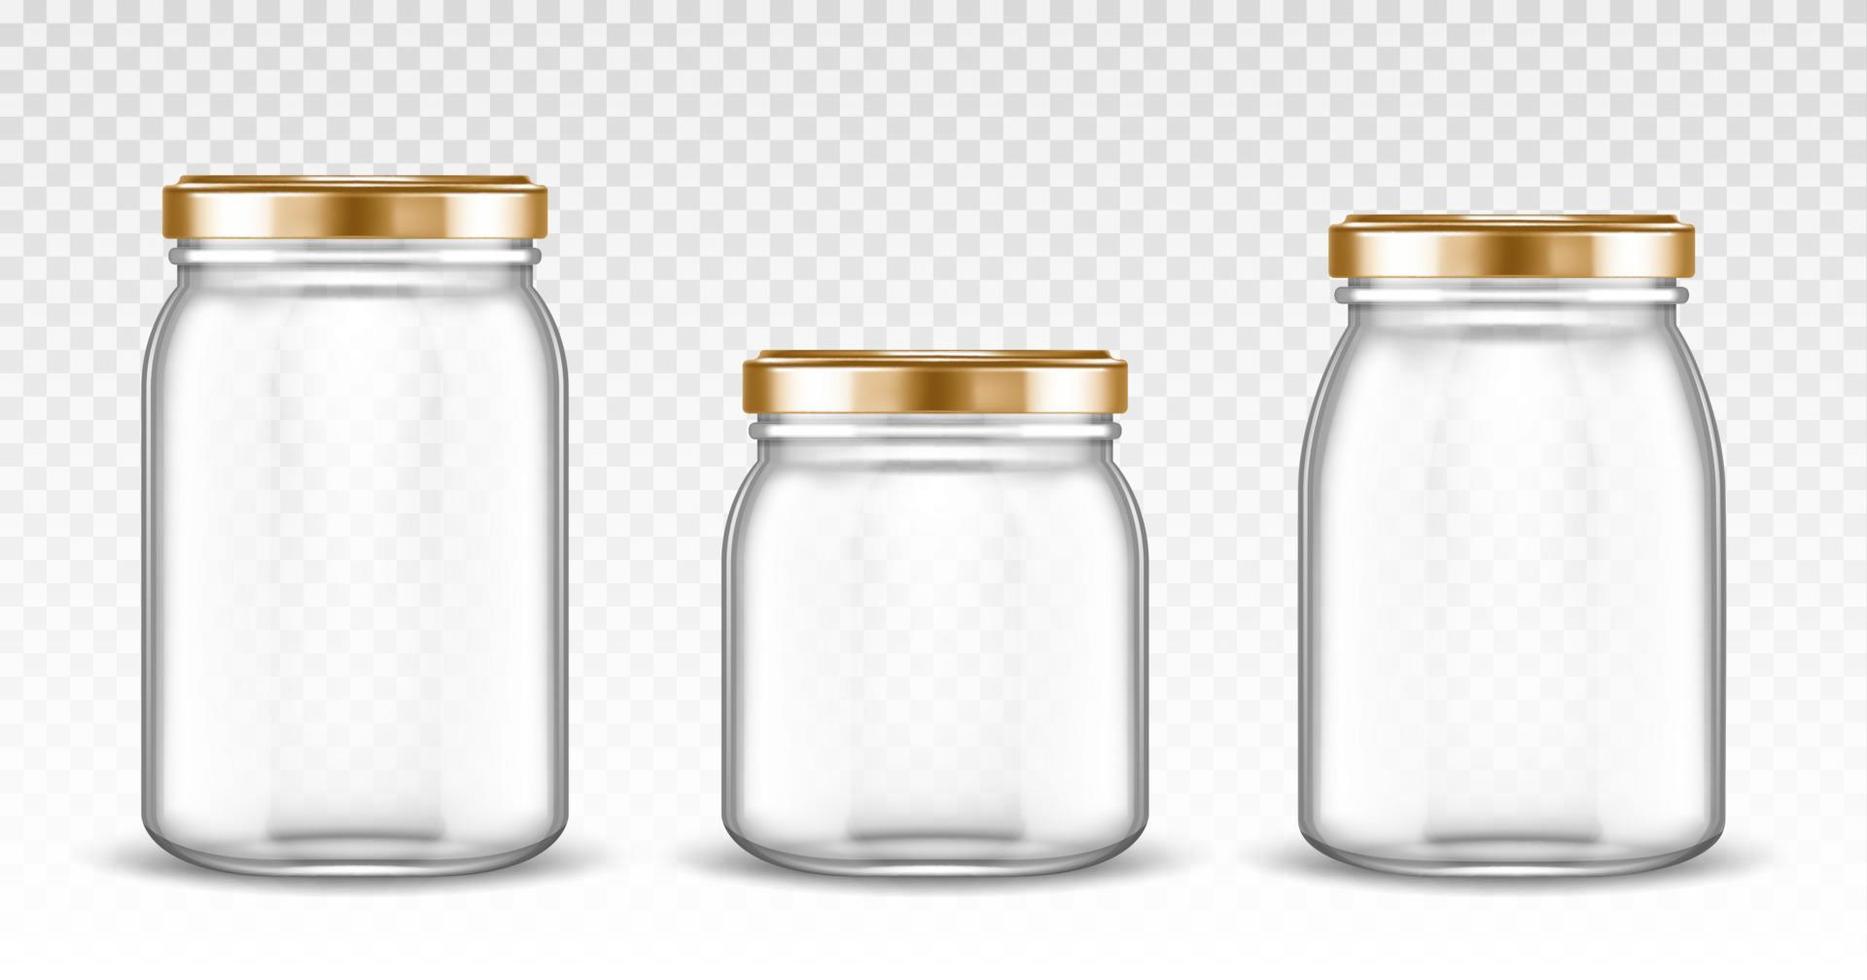 frascos de vidro vazios formas diferentes com tampas de ouro vetor